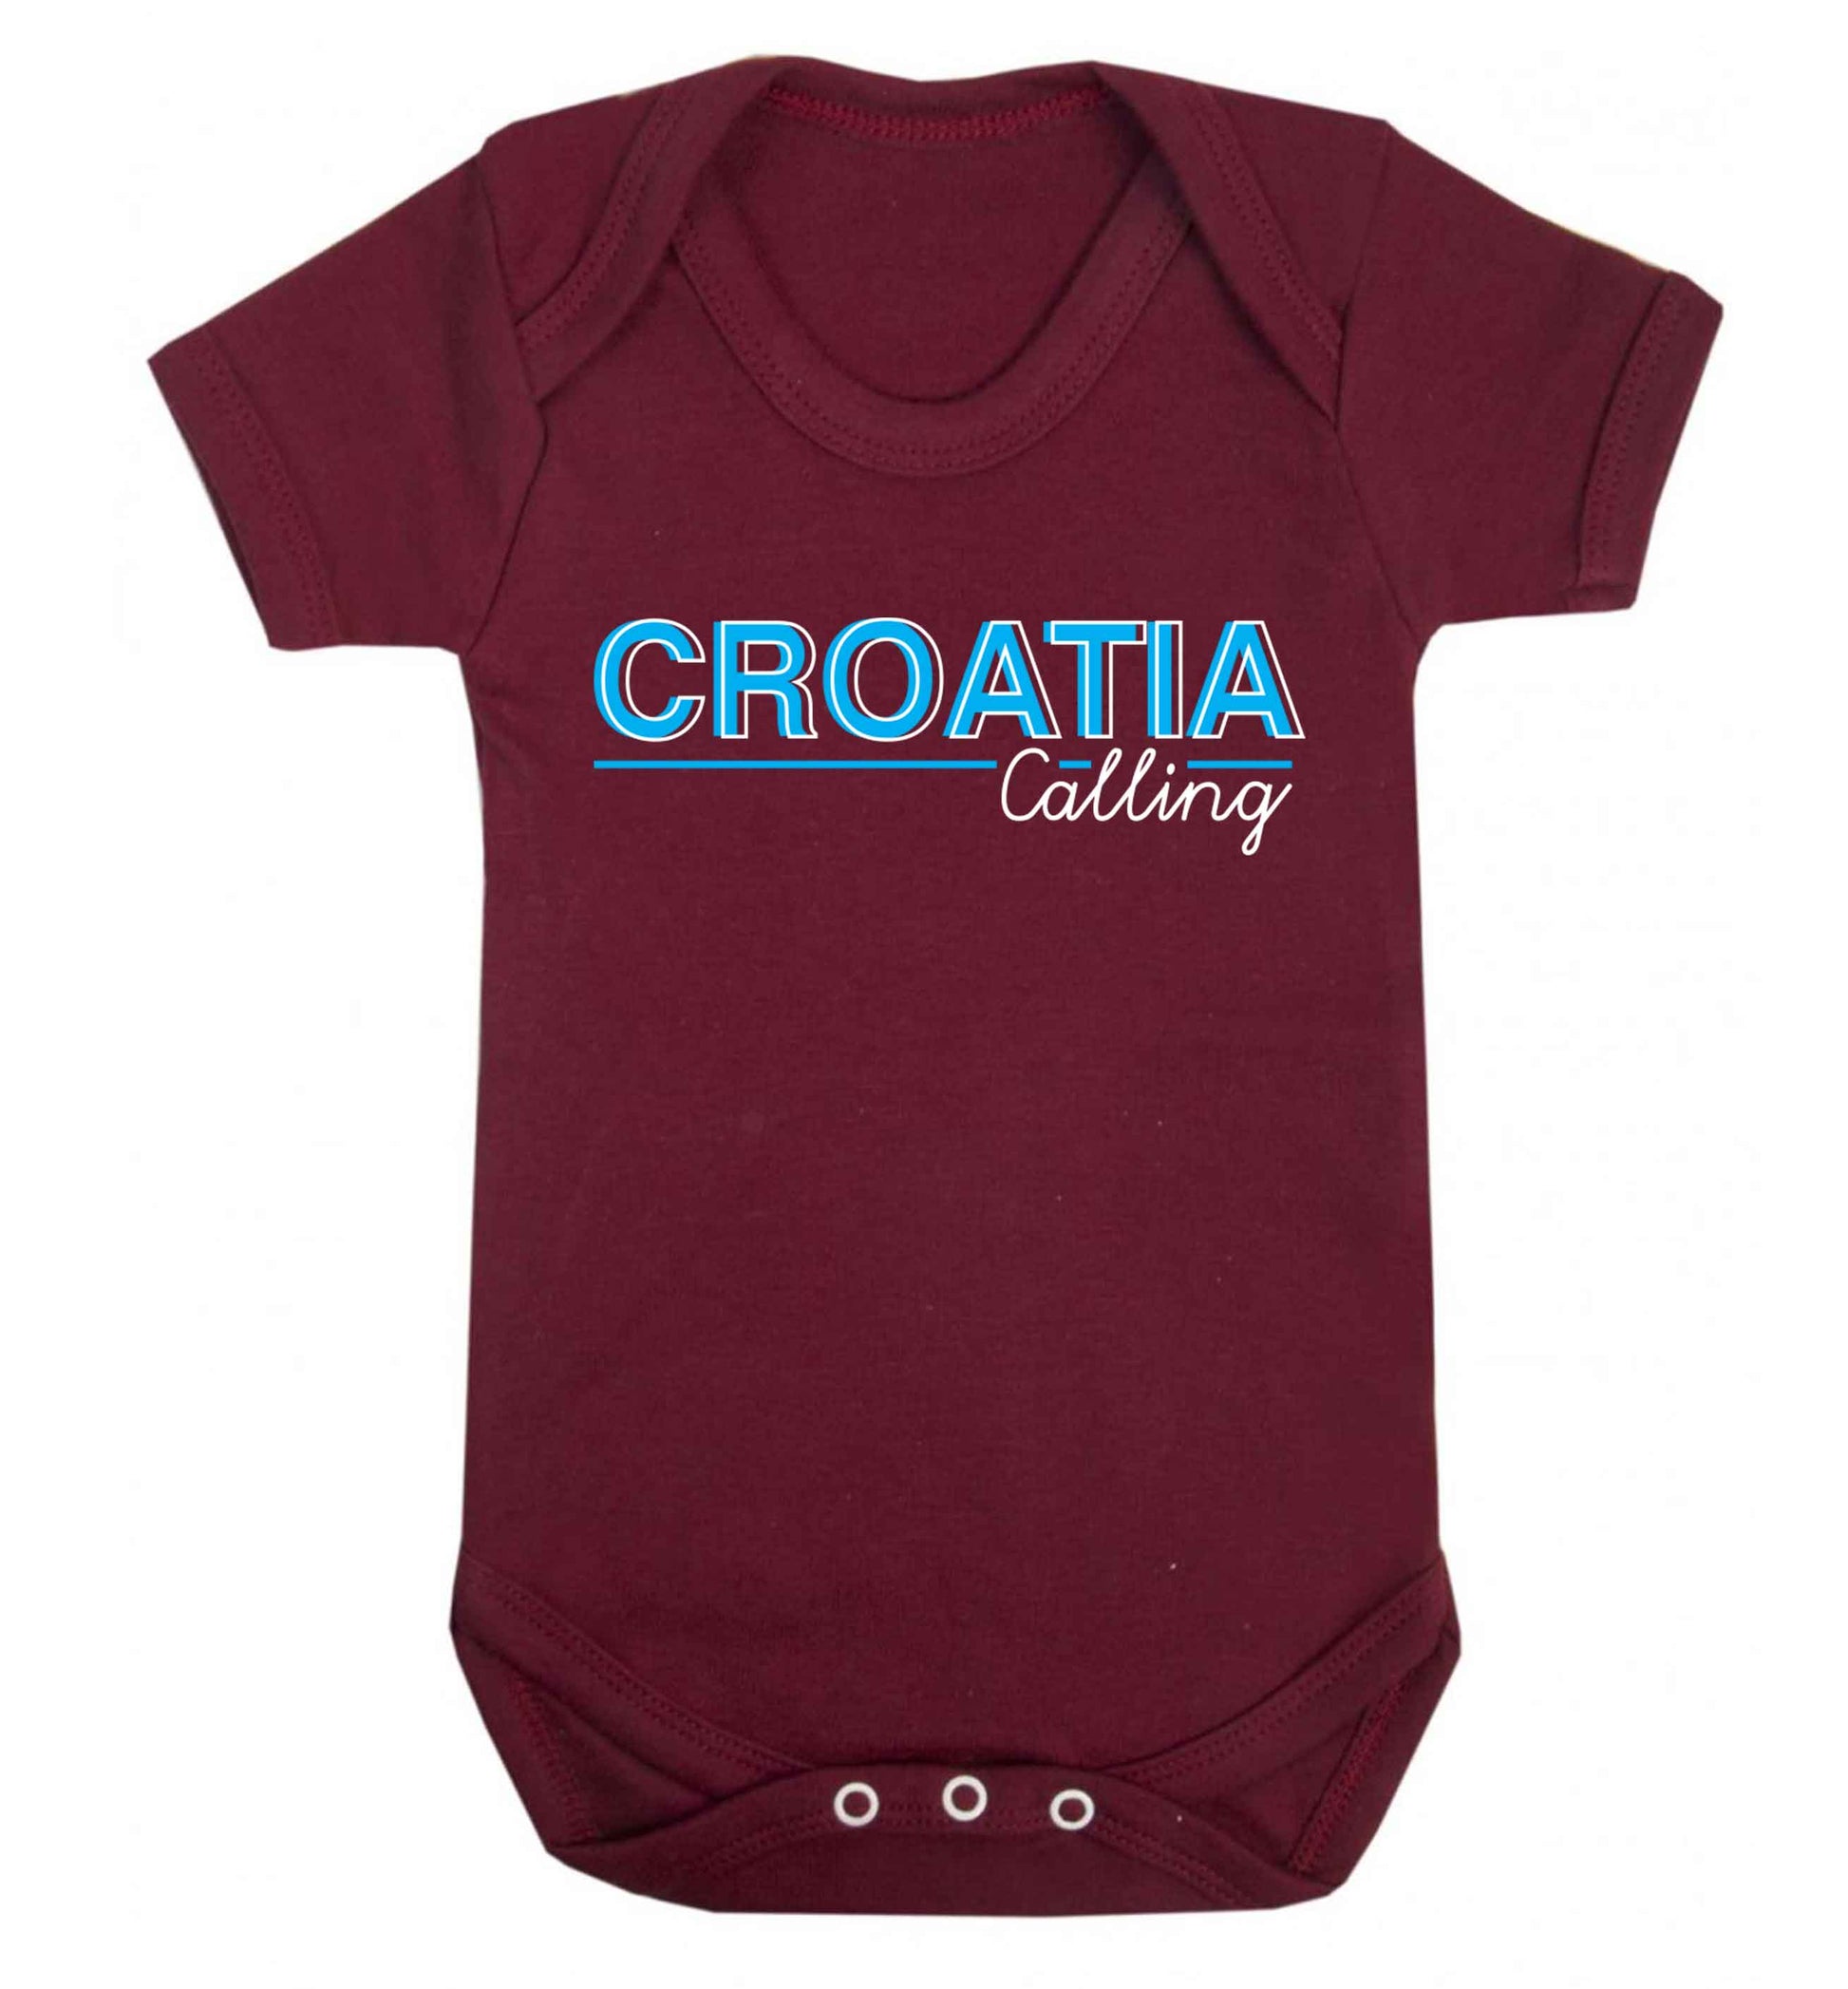 Croatia calling Baby Vest maroon 18-24 months